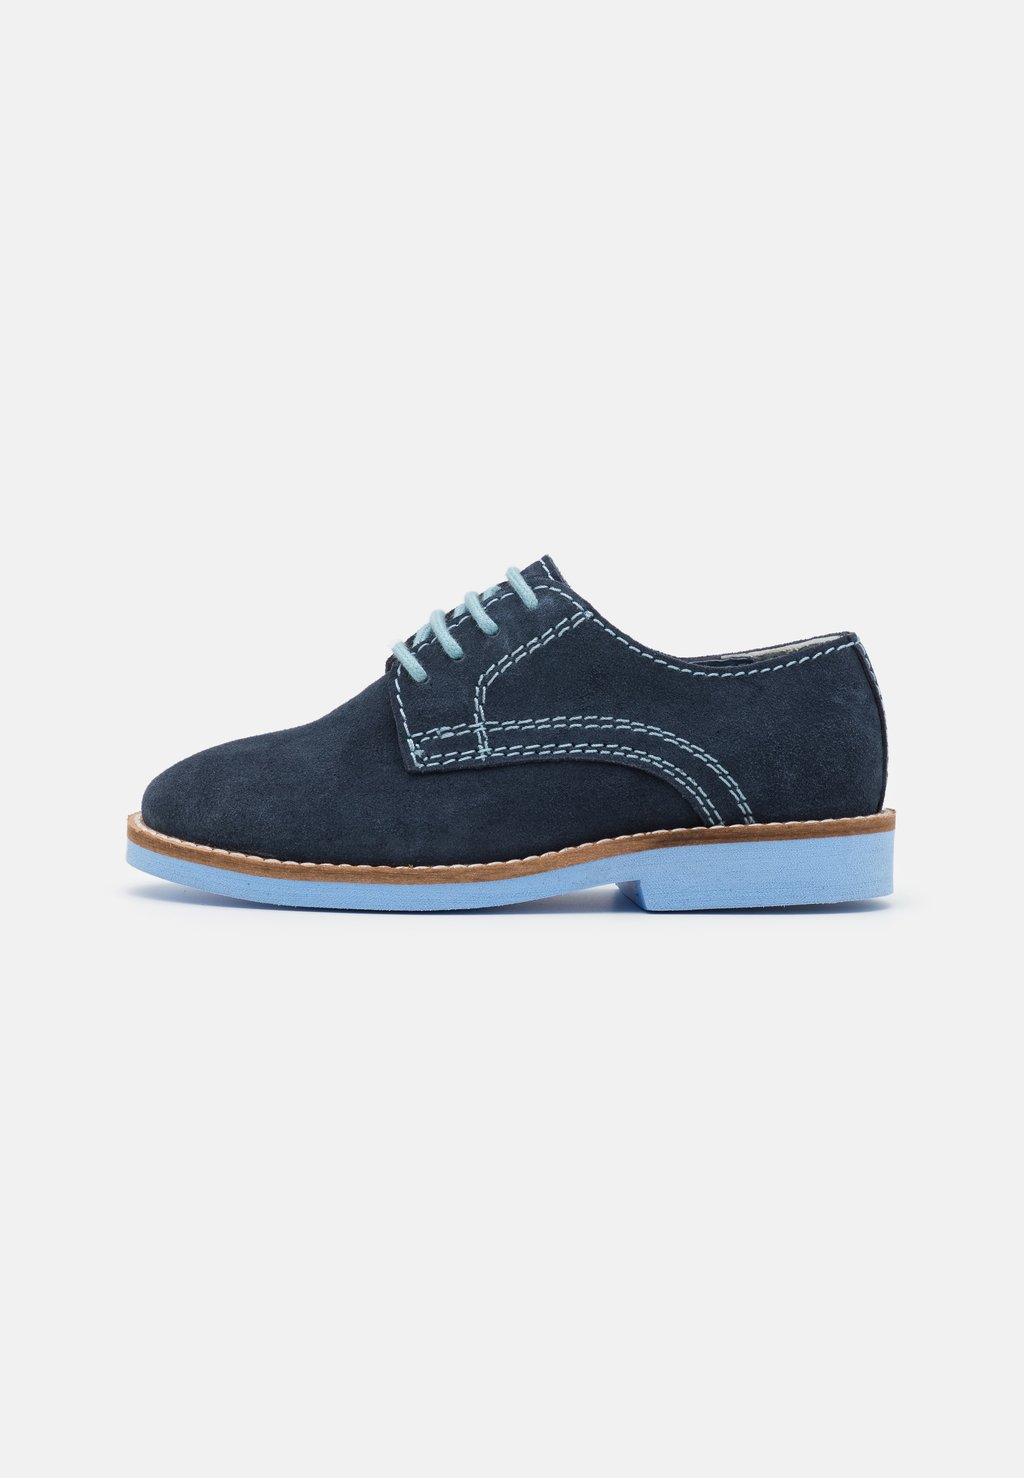 Спортивные туфли на шнуровке LEATHER Friboo, цвет dark blue спортивные туфли на шнуровке derbies bugatti цвет dark blue dark blue